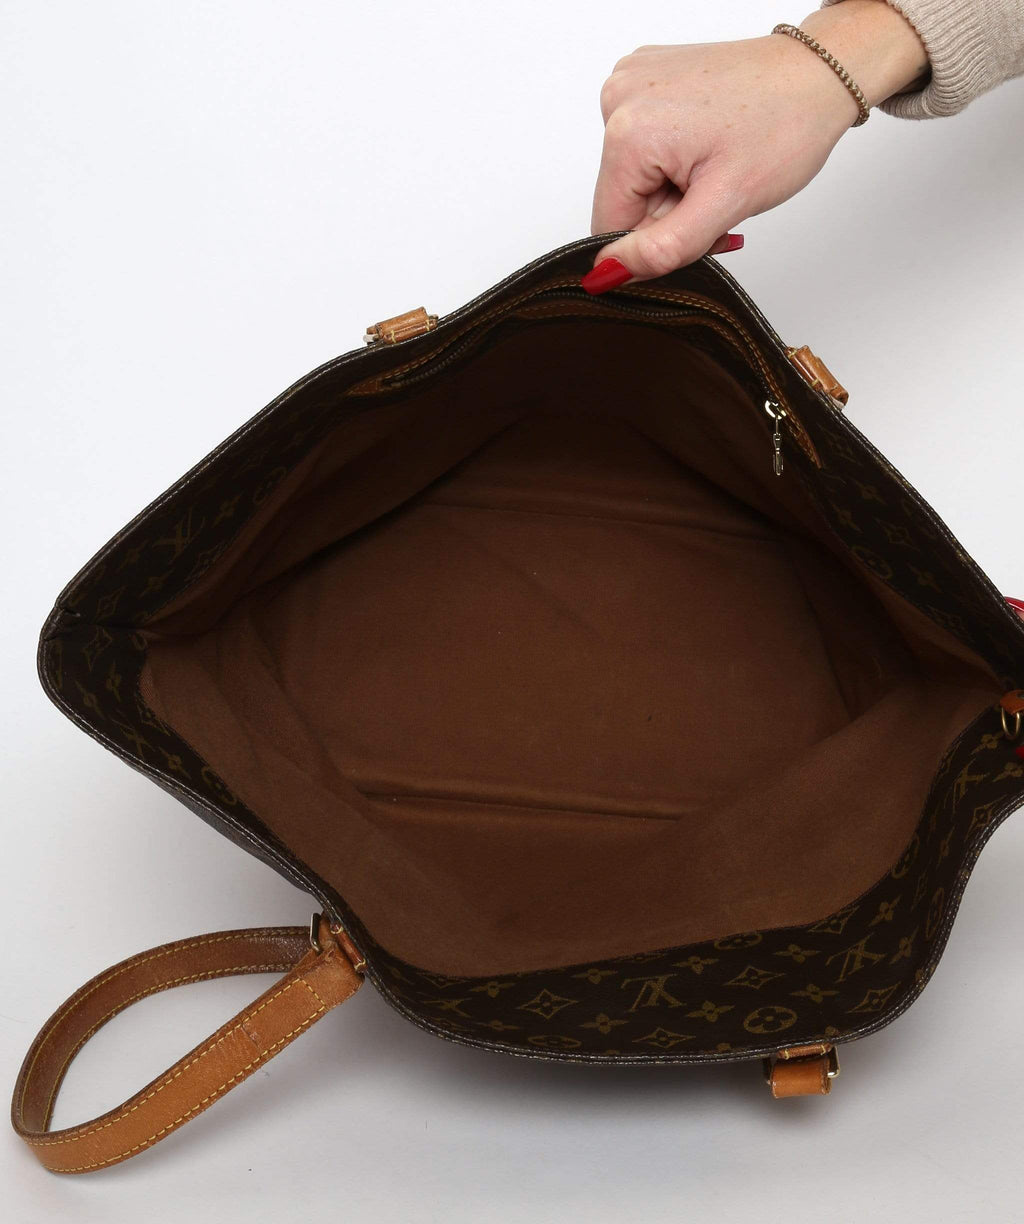 Louis Vuitton Monogram Sac Shopping Tote Bag 862740